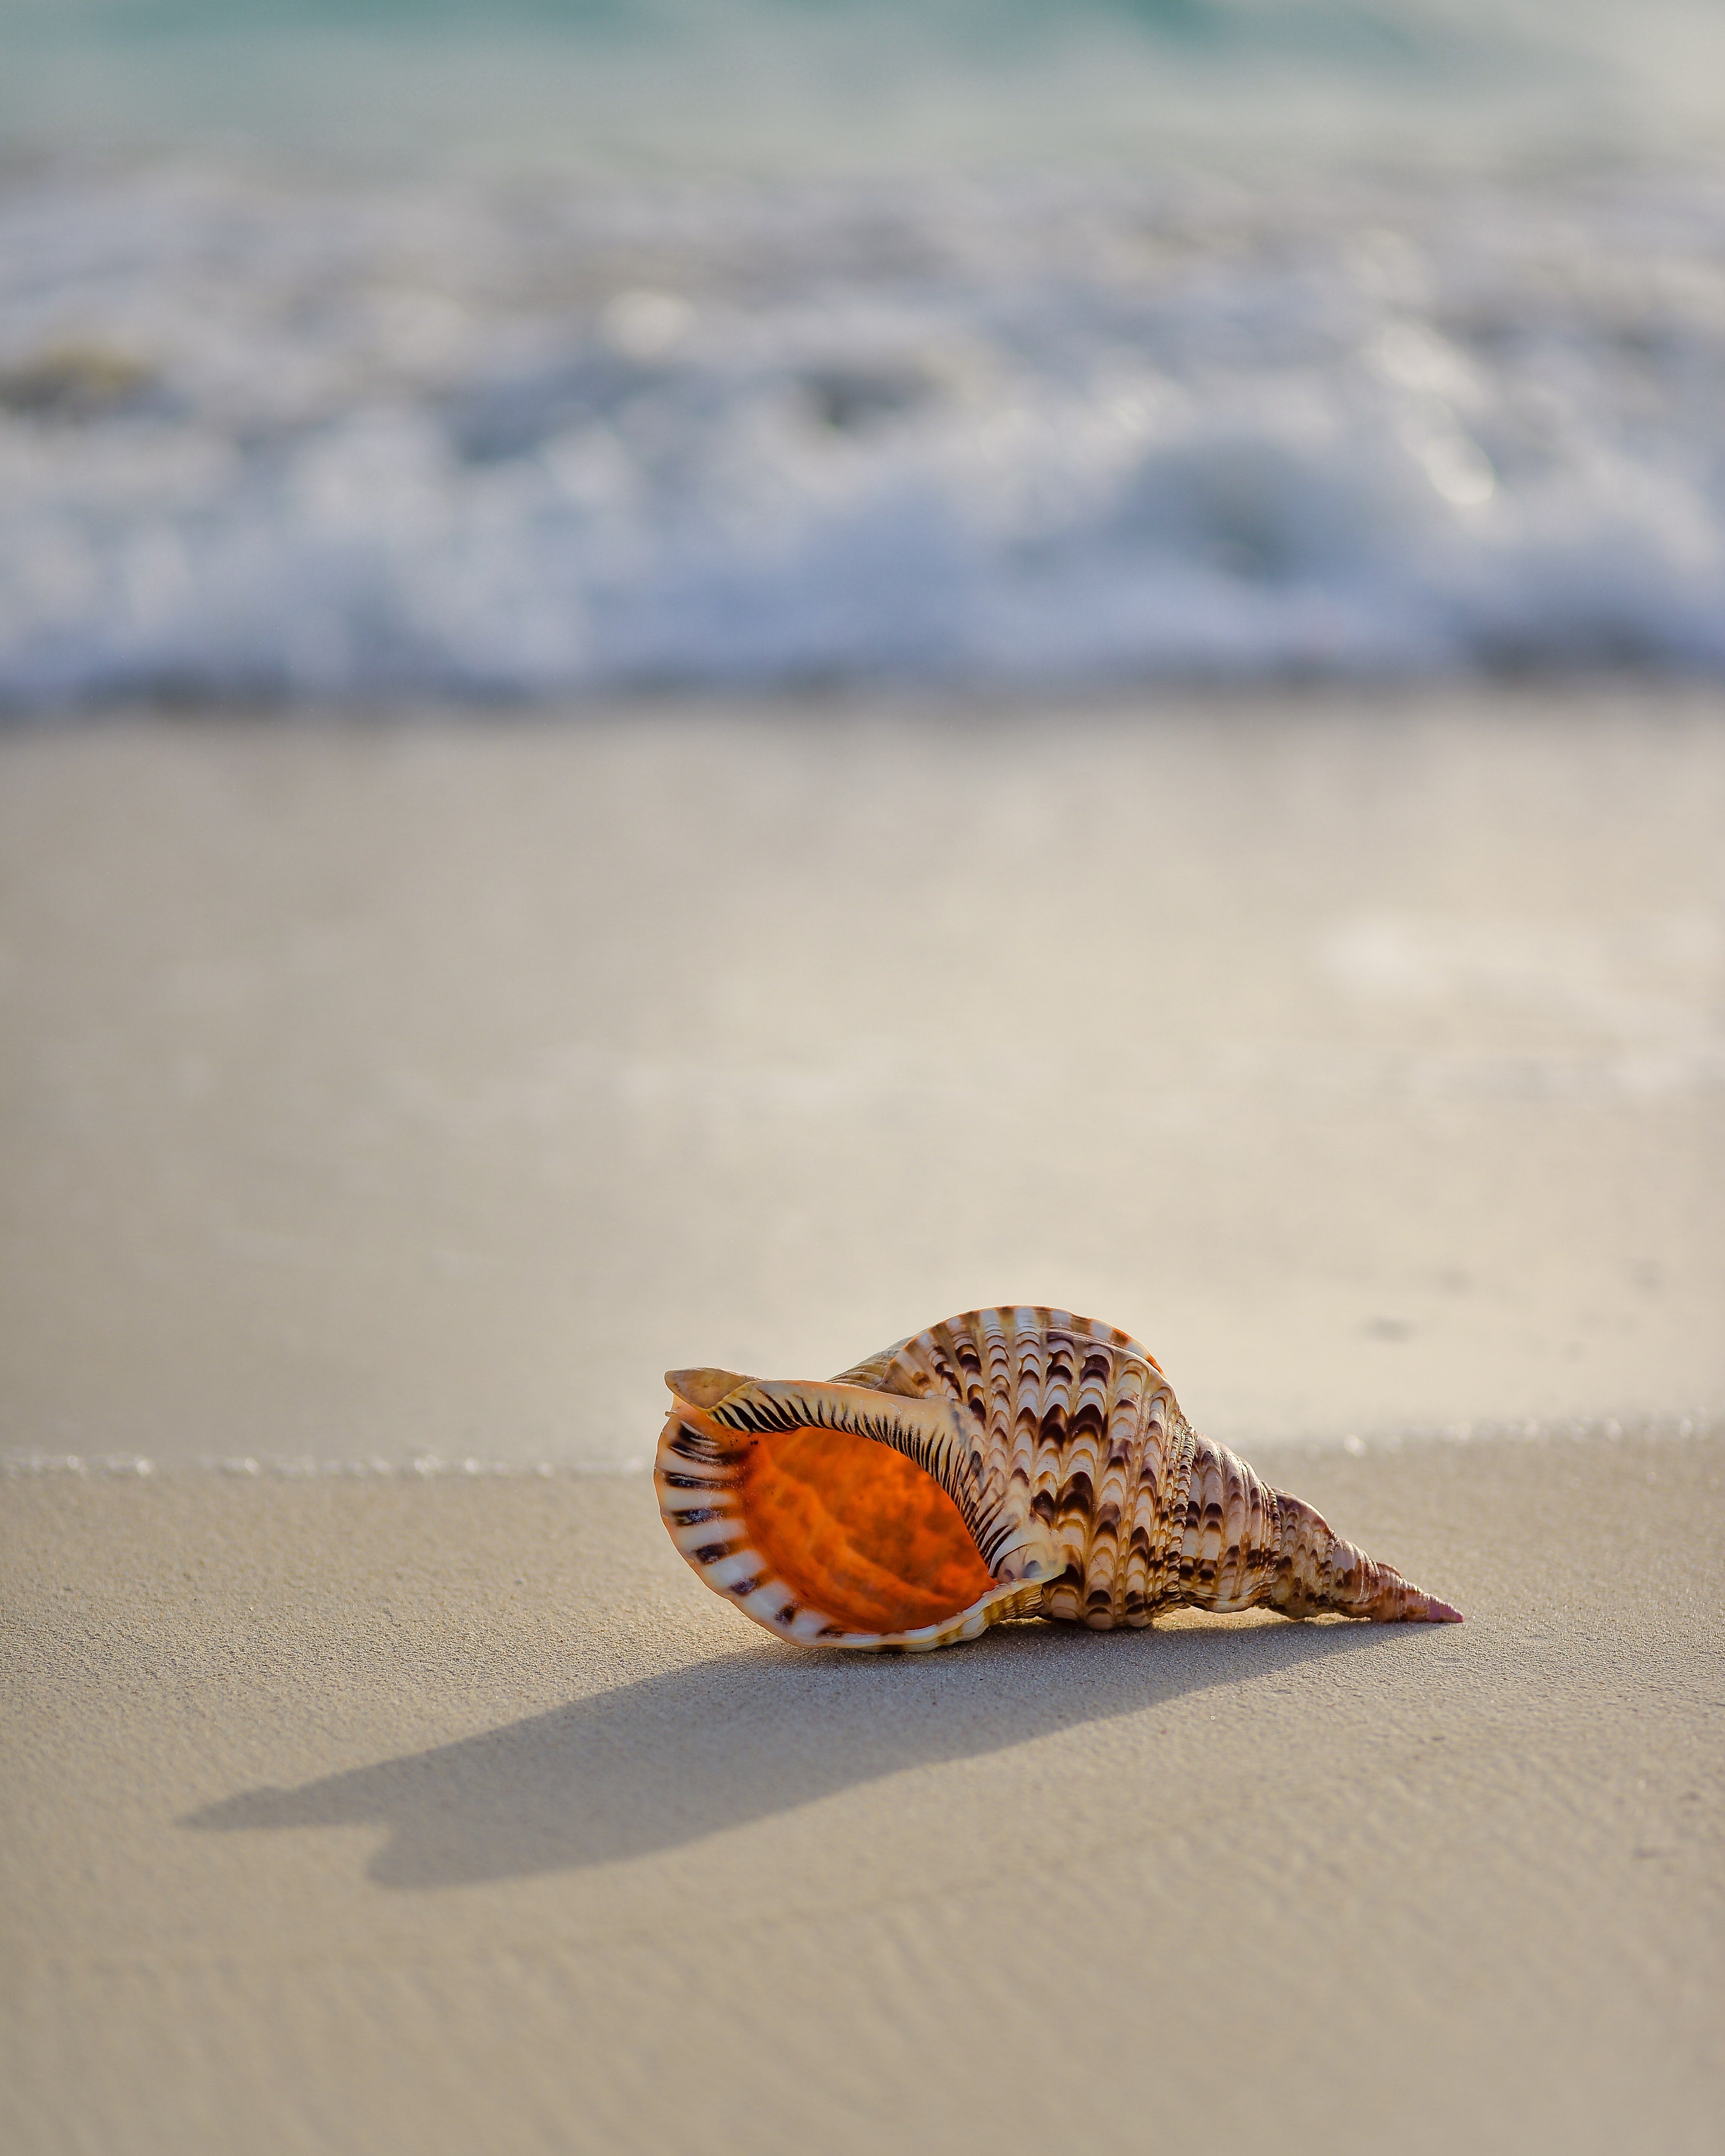 Seashell on sea shore.